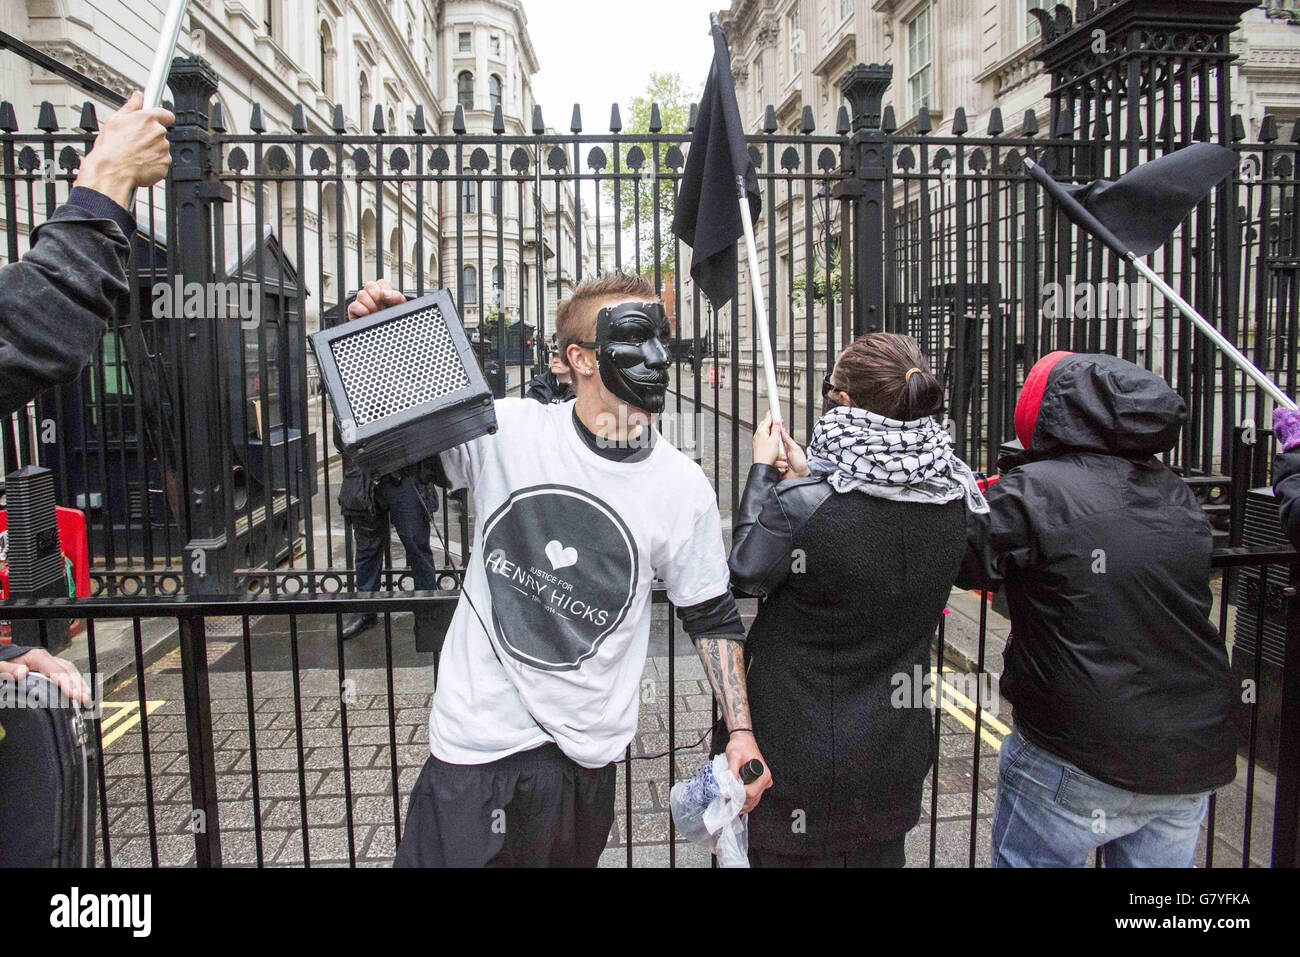 Un puñado de manifestantes con máscaras y banderas negras agitadas se encuentran junto a las puertas de la entrada de Downing Street gritando cantos anticonservadores y afirmando que el primer ministro David Cameron está lleno de mentiras. Foto de stock